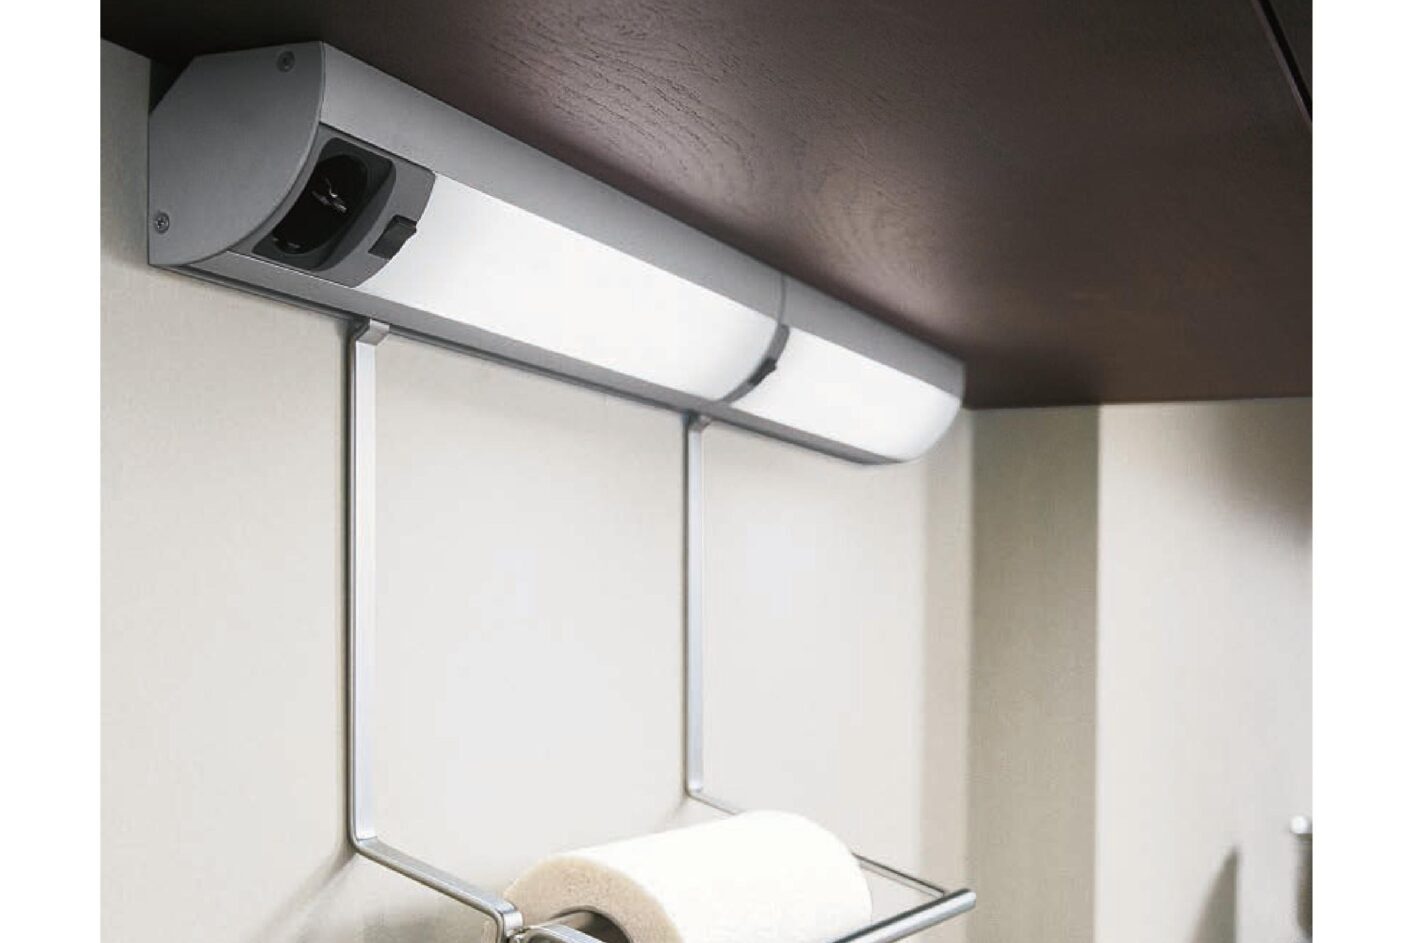 Sistema de luz para muebles de cocina con toma de red, led y transformador integrado